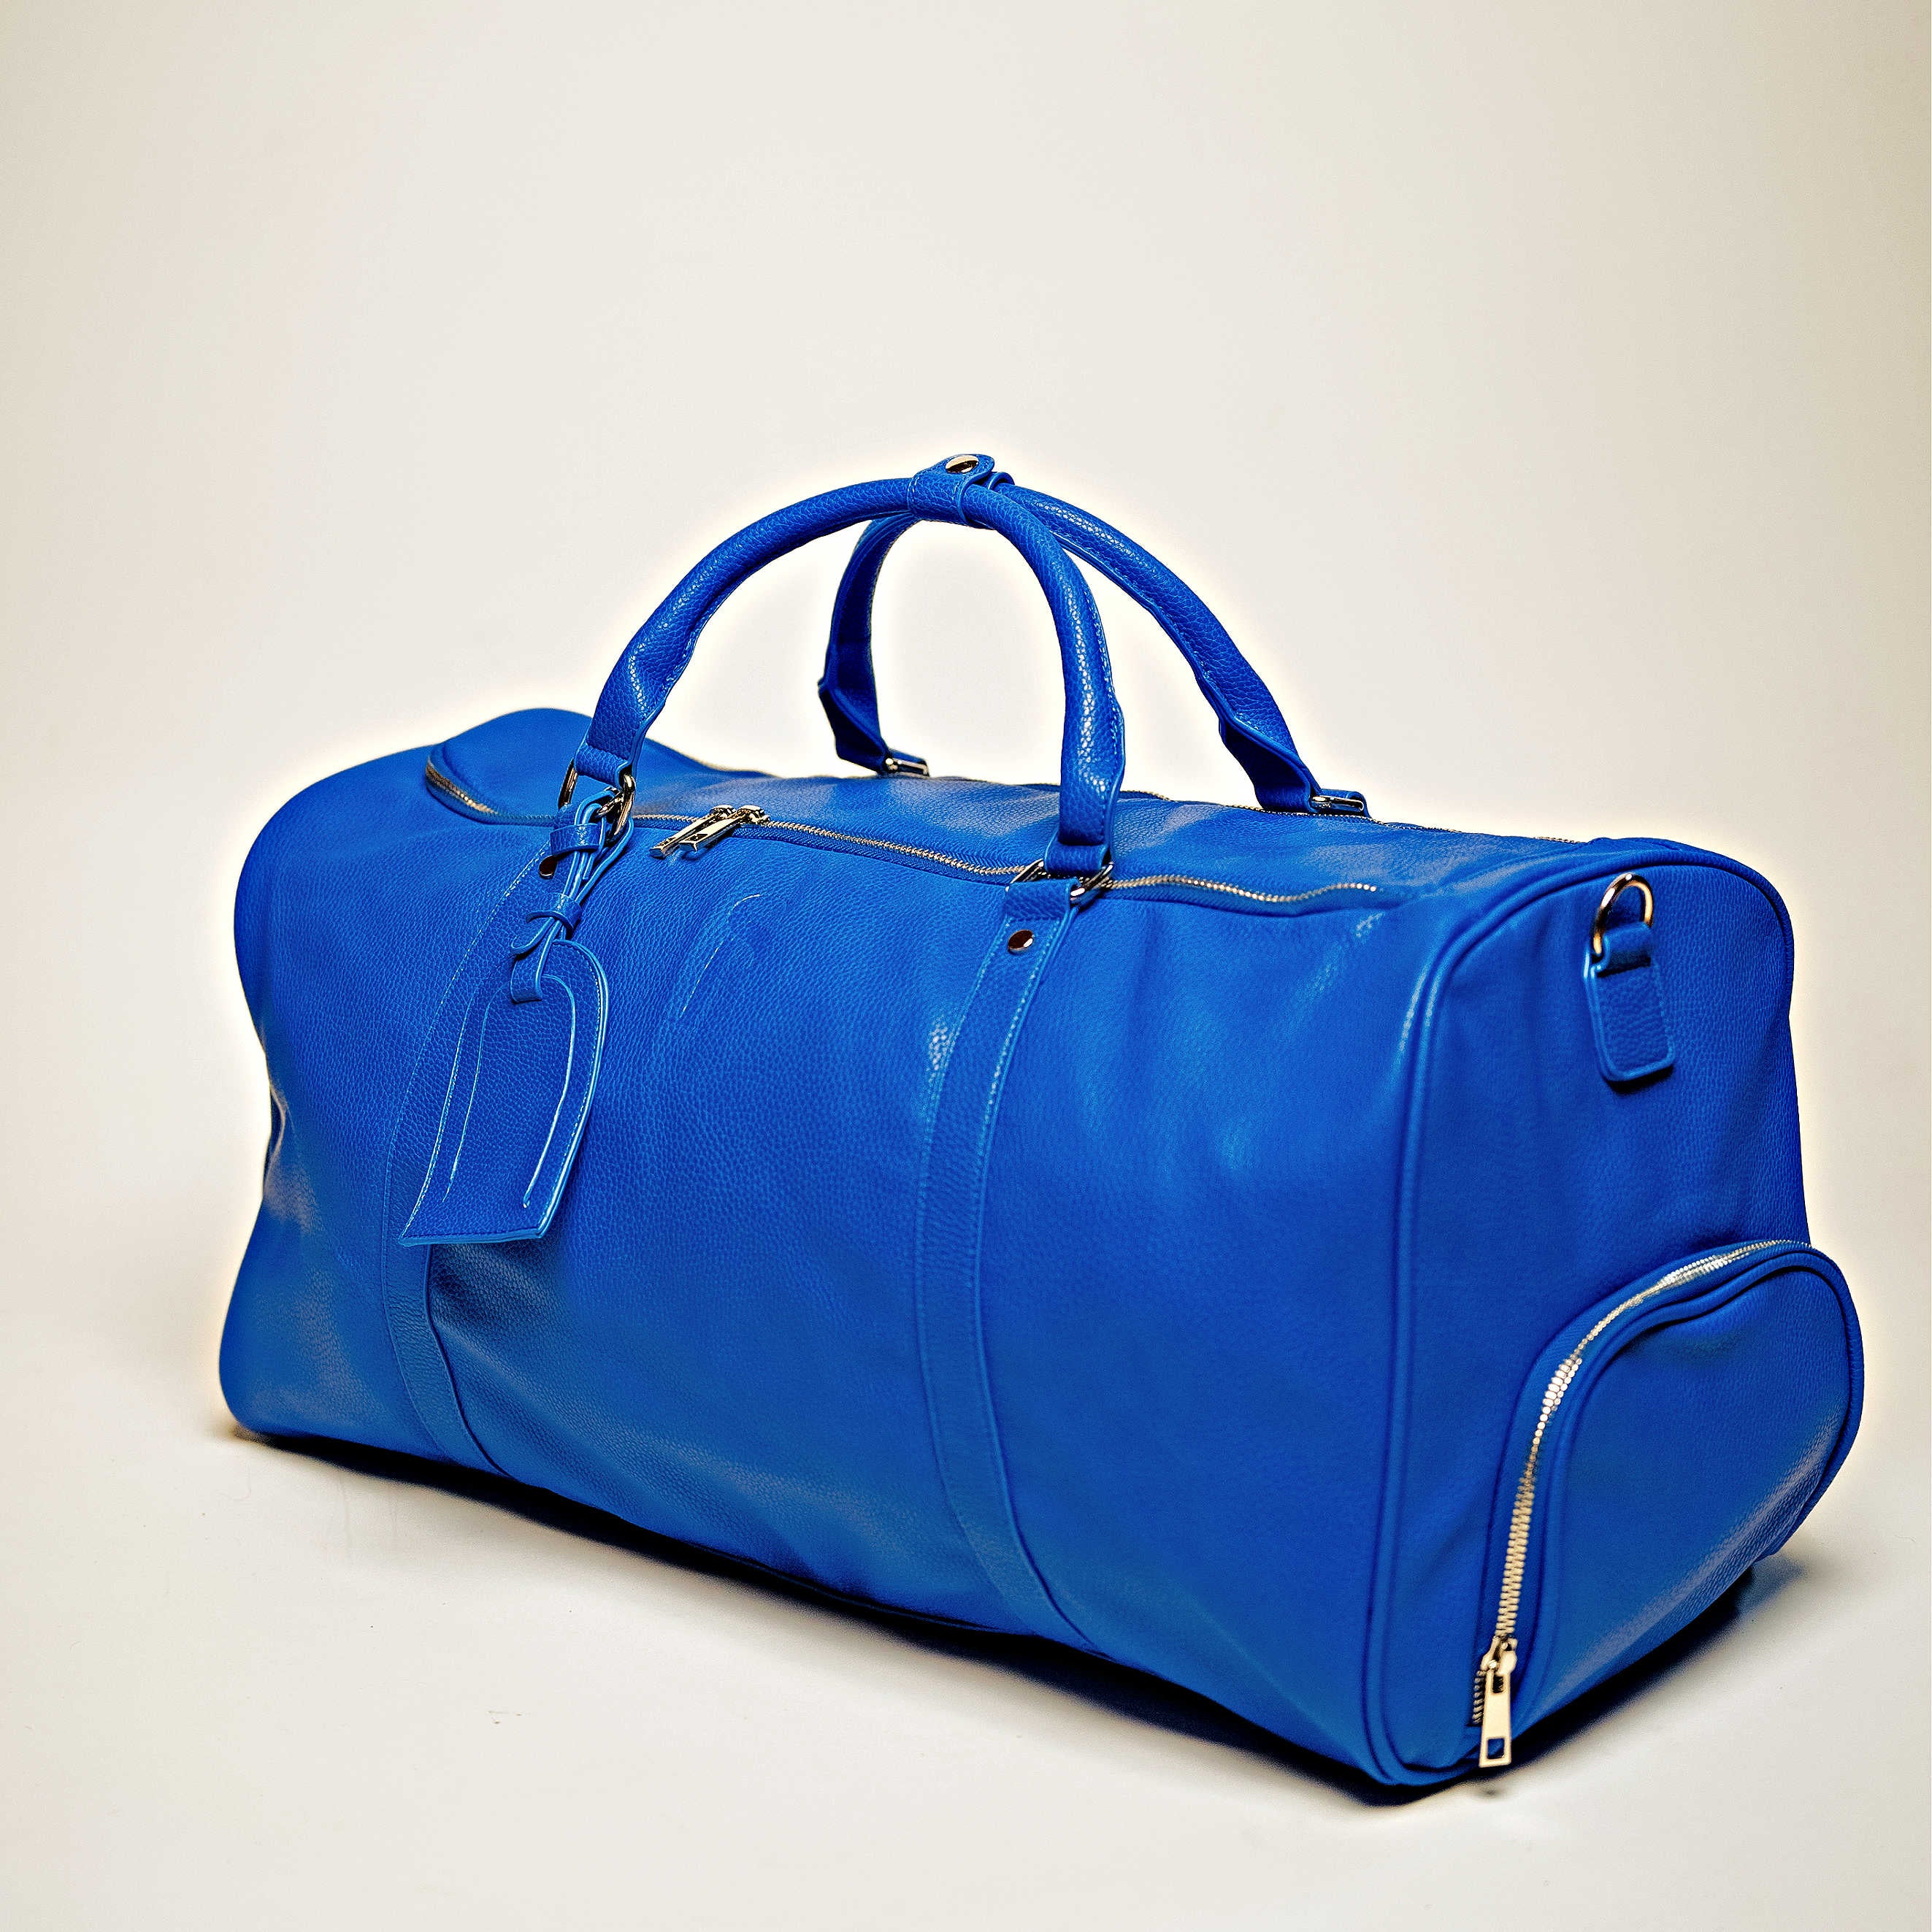 Royal Blue Leather Roller Bag Set